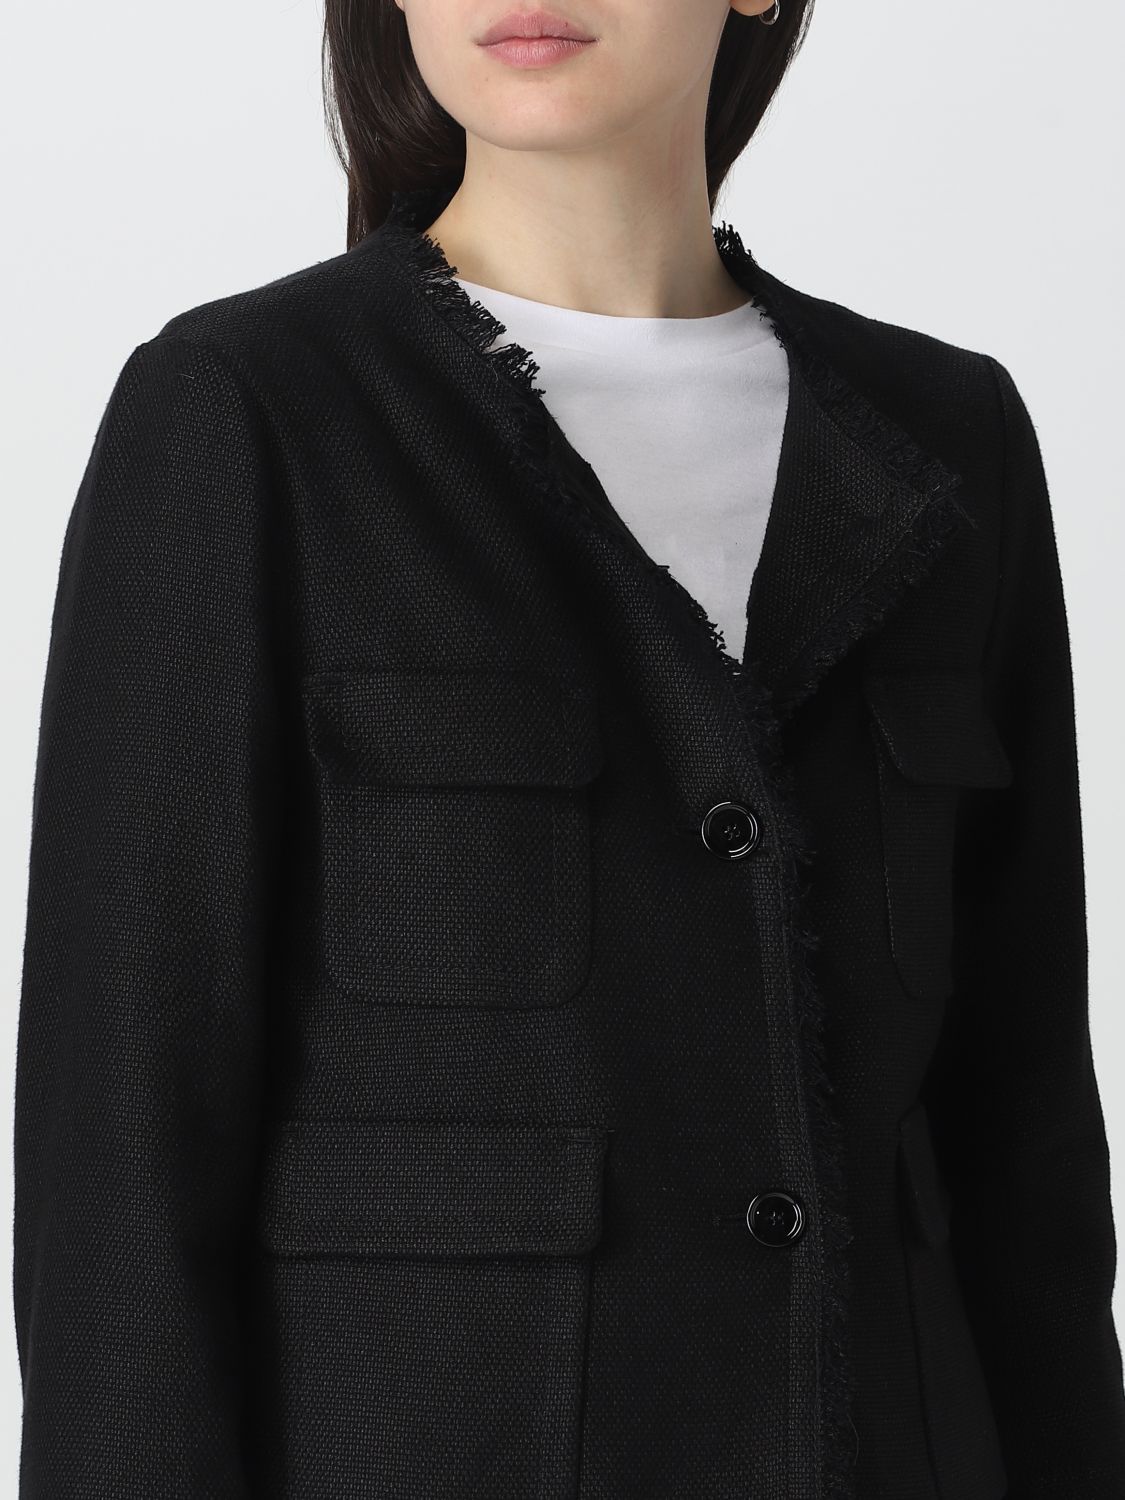 S MAX MARA: jacket for women - Black | S Max Mara jacket 2390410532600 ...